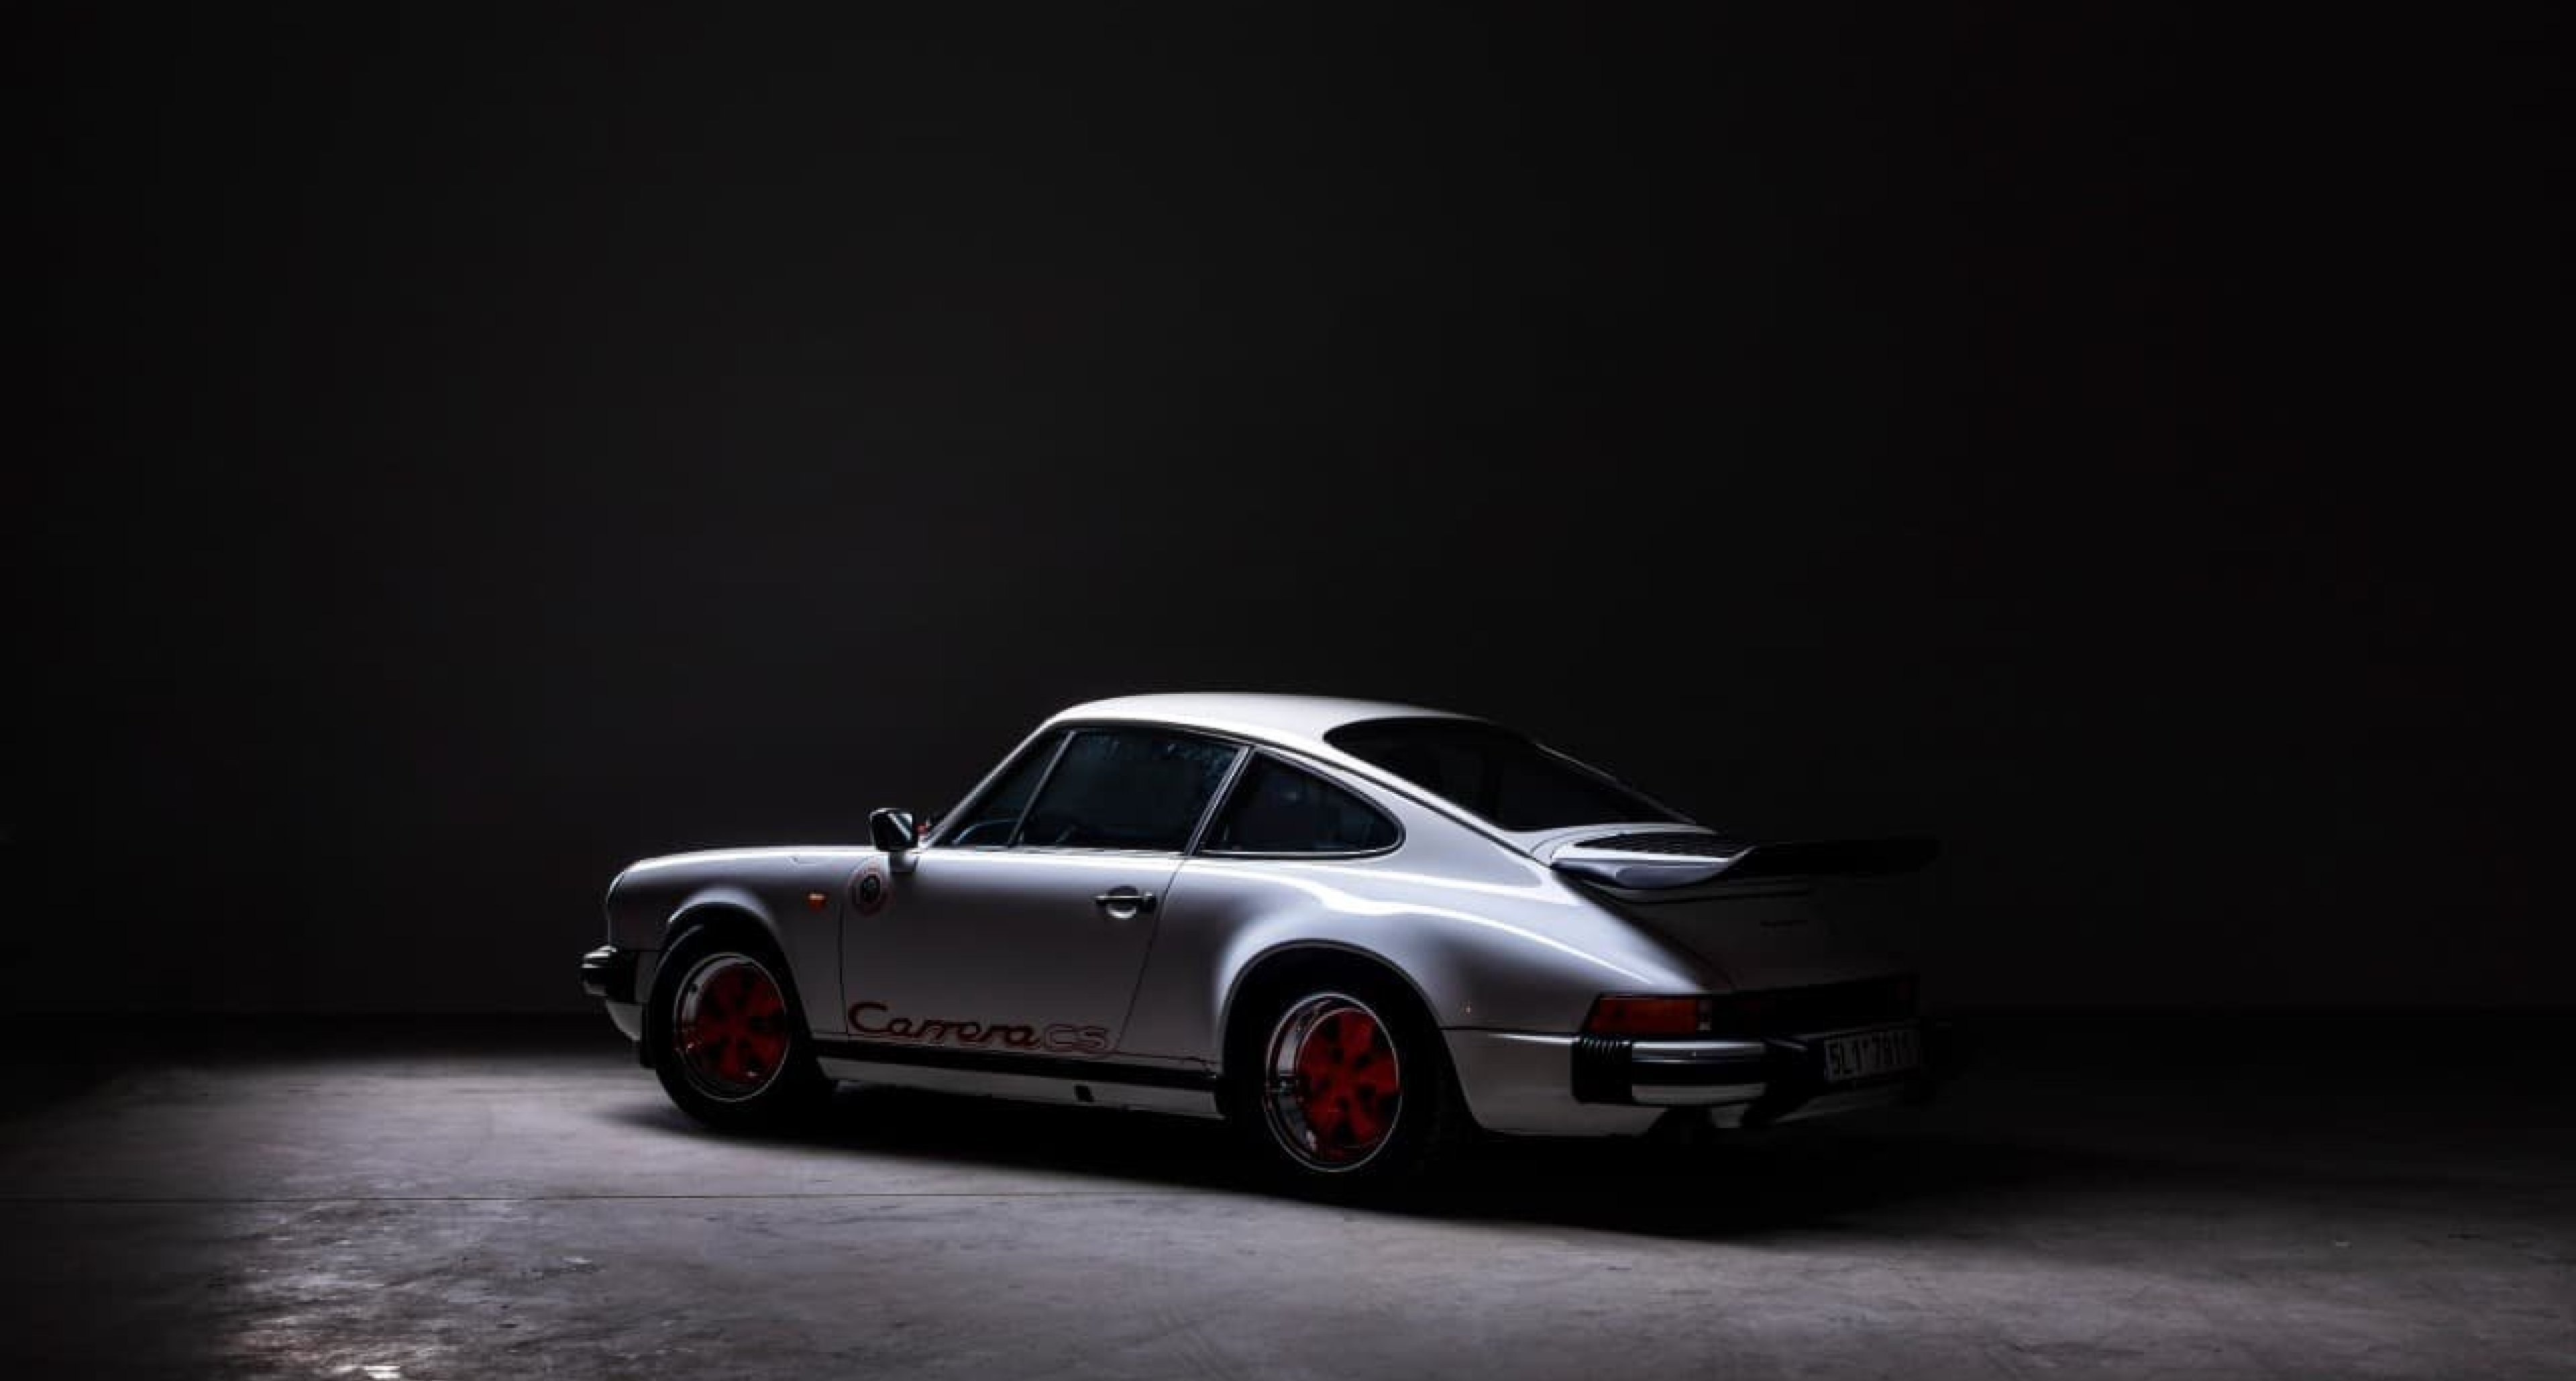 1987 Porsche 911 